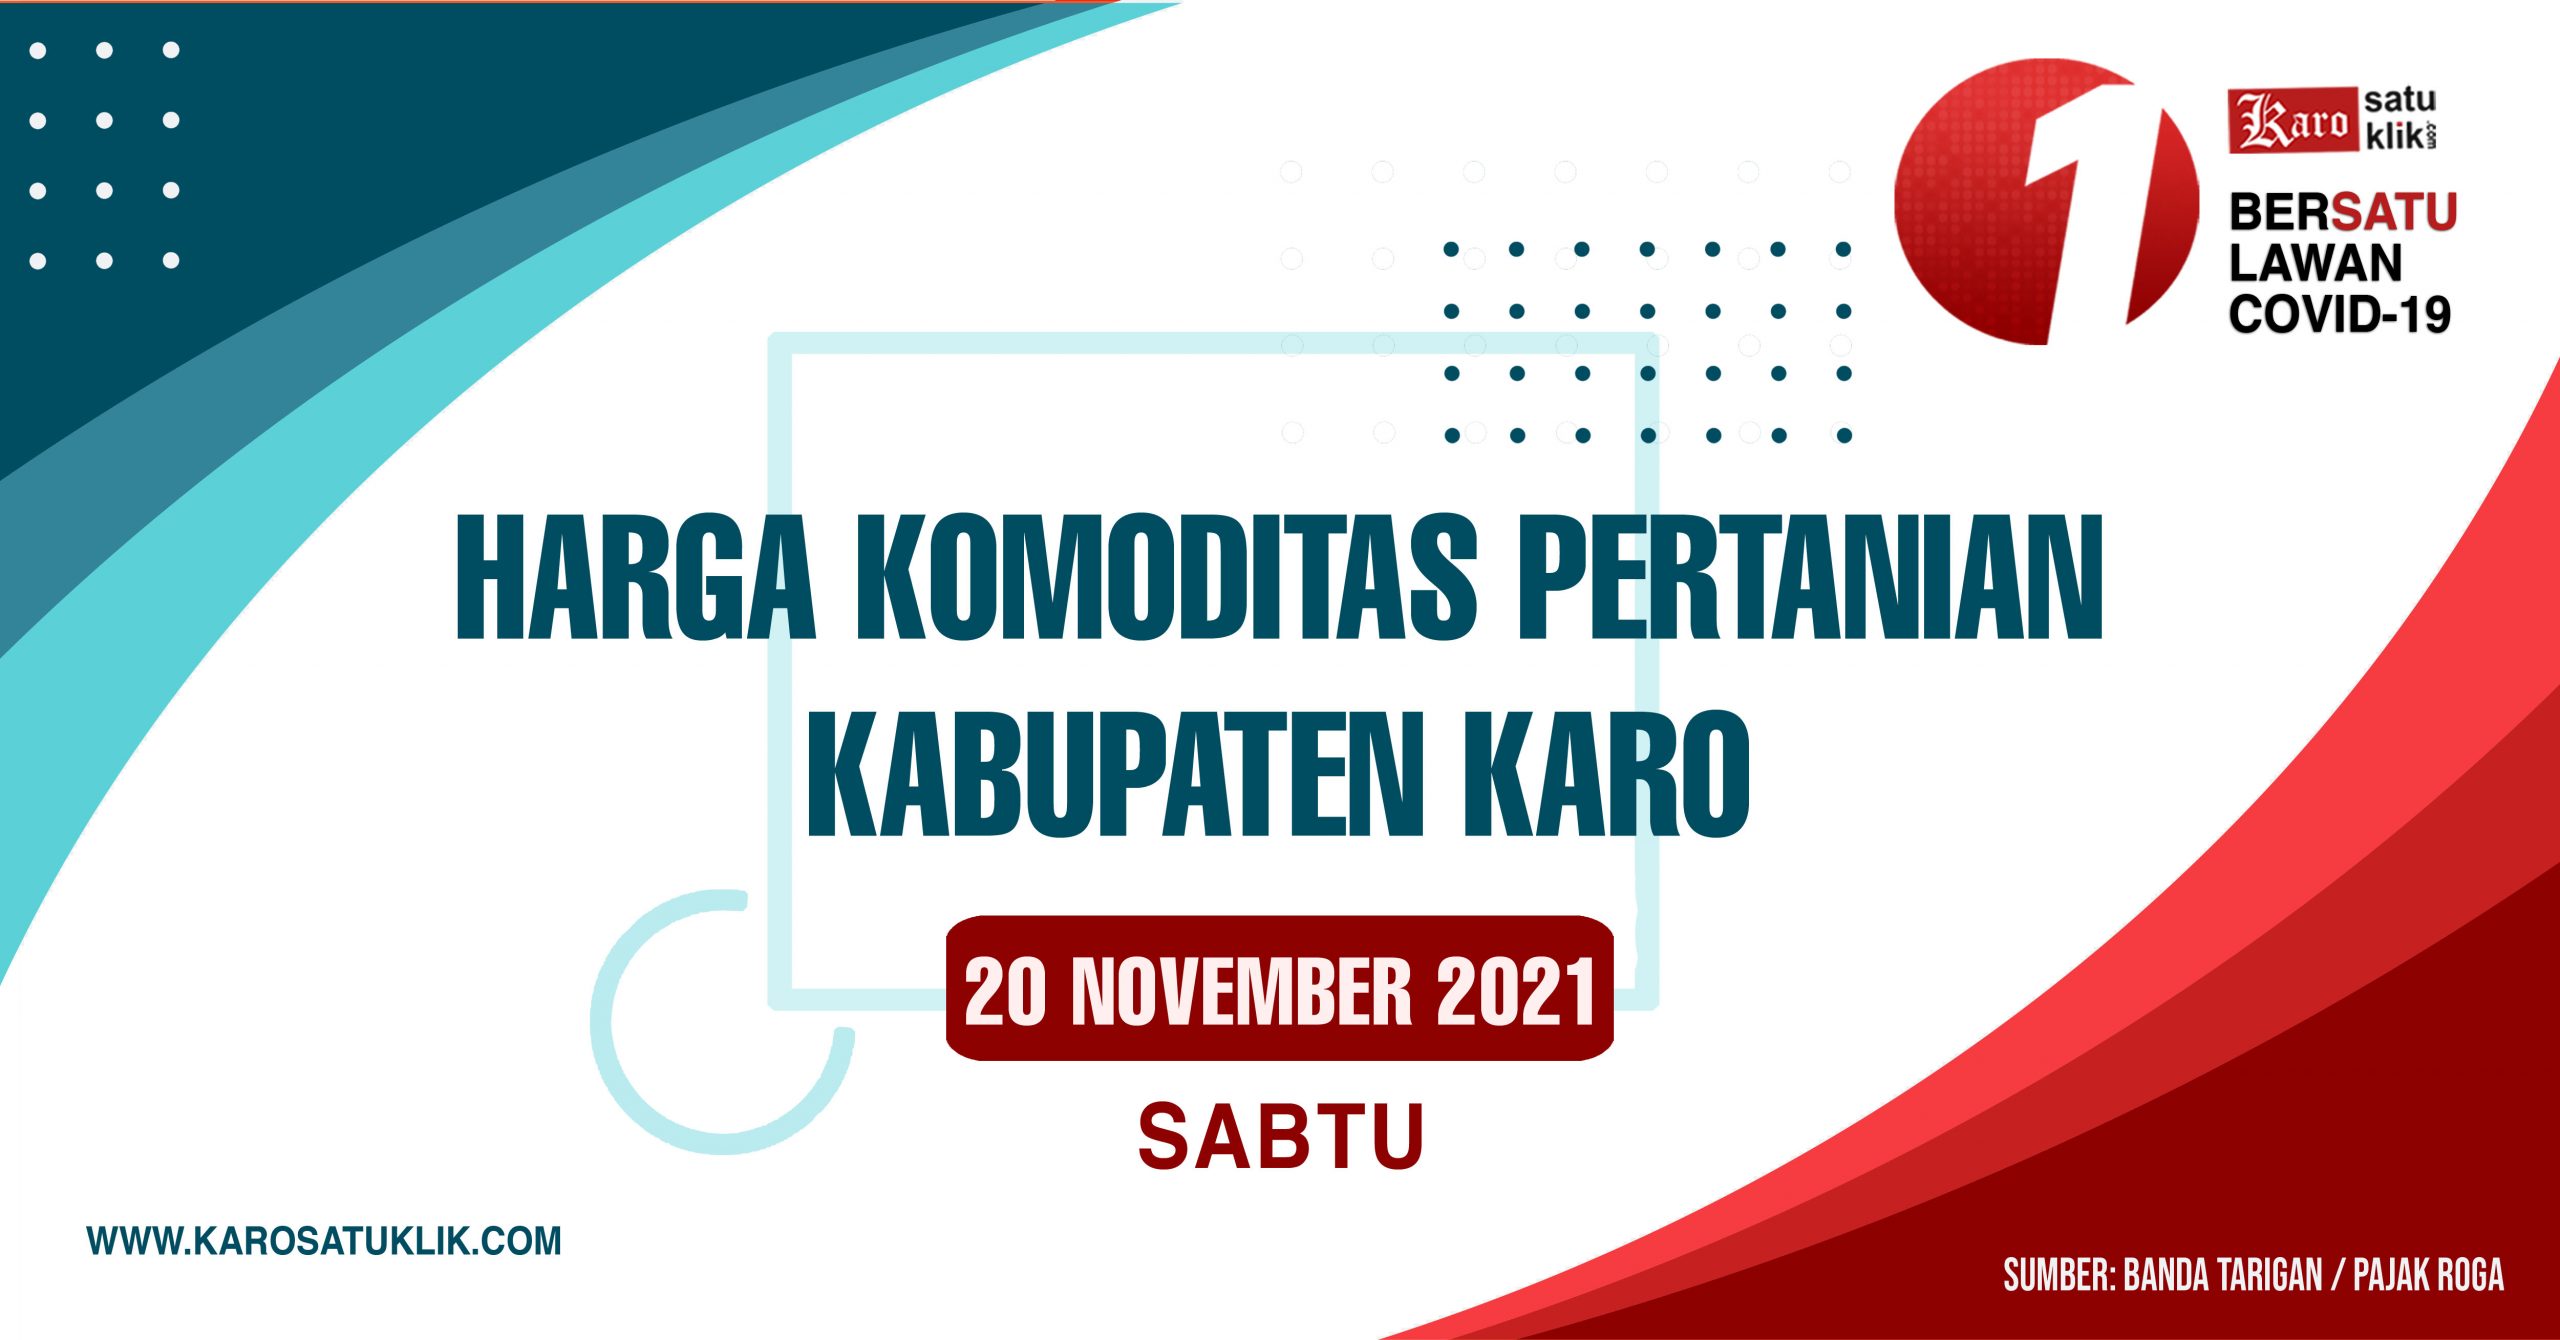 Daftar Harga Komoditas Pertanian Kabupaten Karo, 20 November 2021